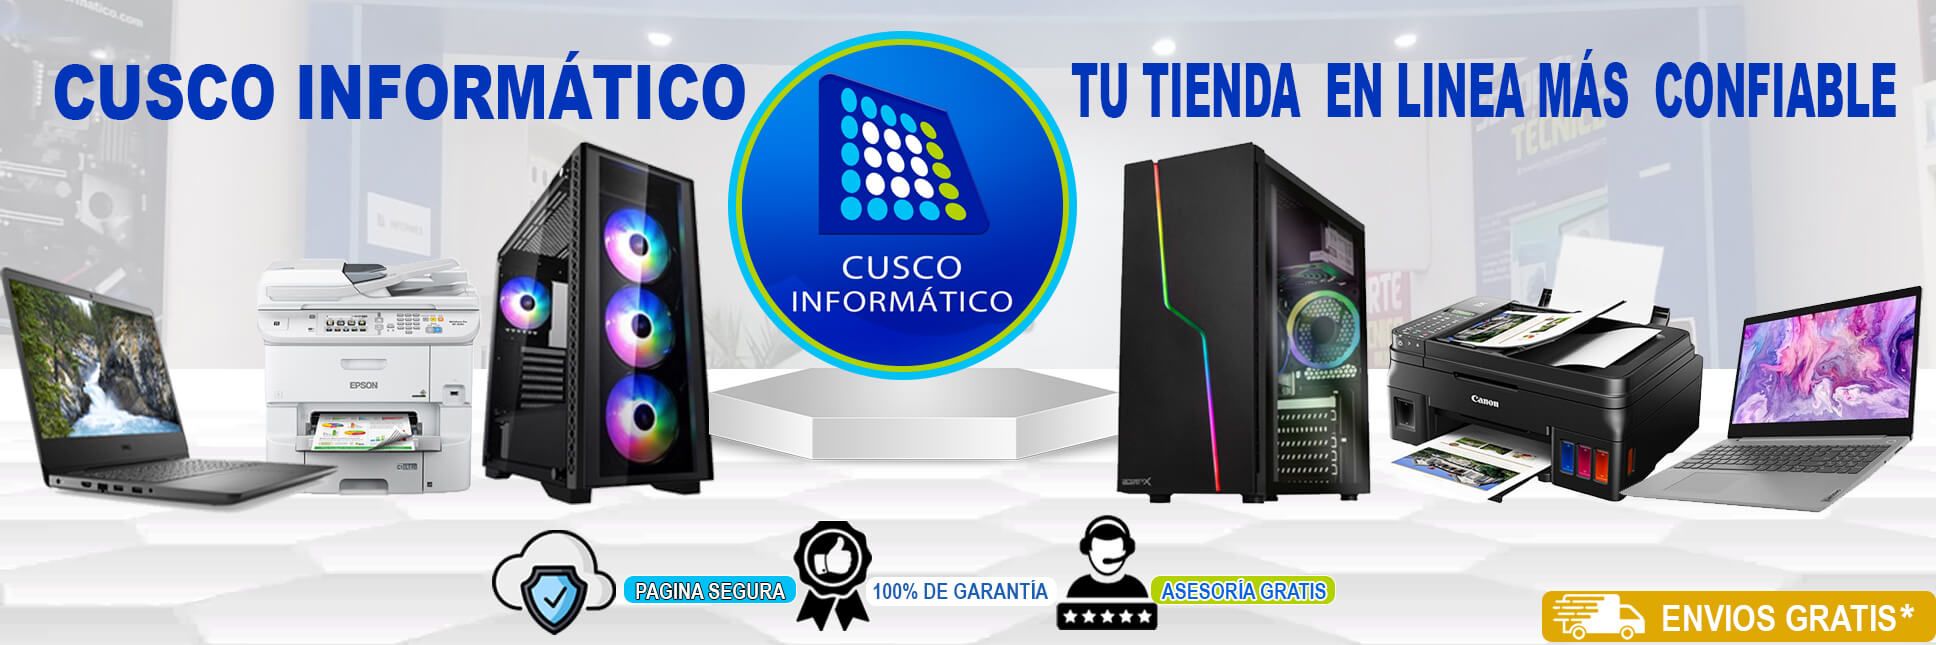 Cusco Informatico, productos destacados